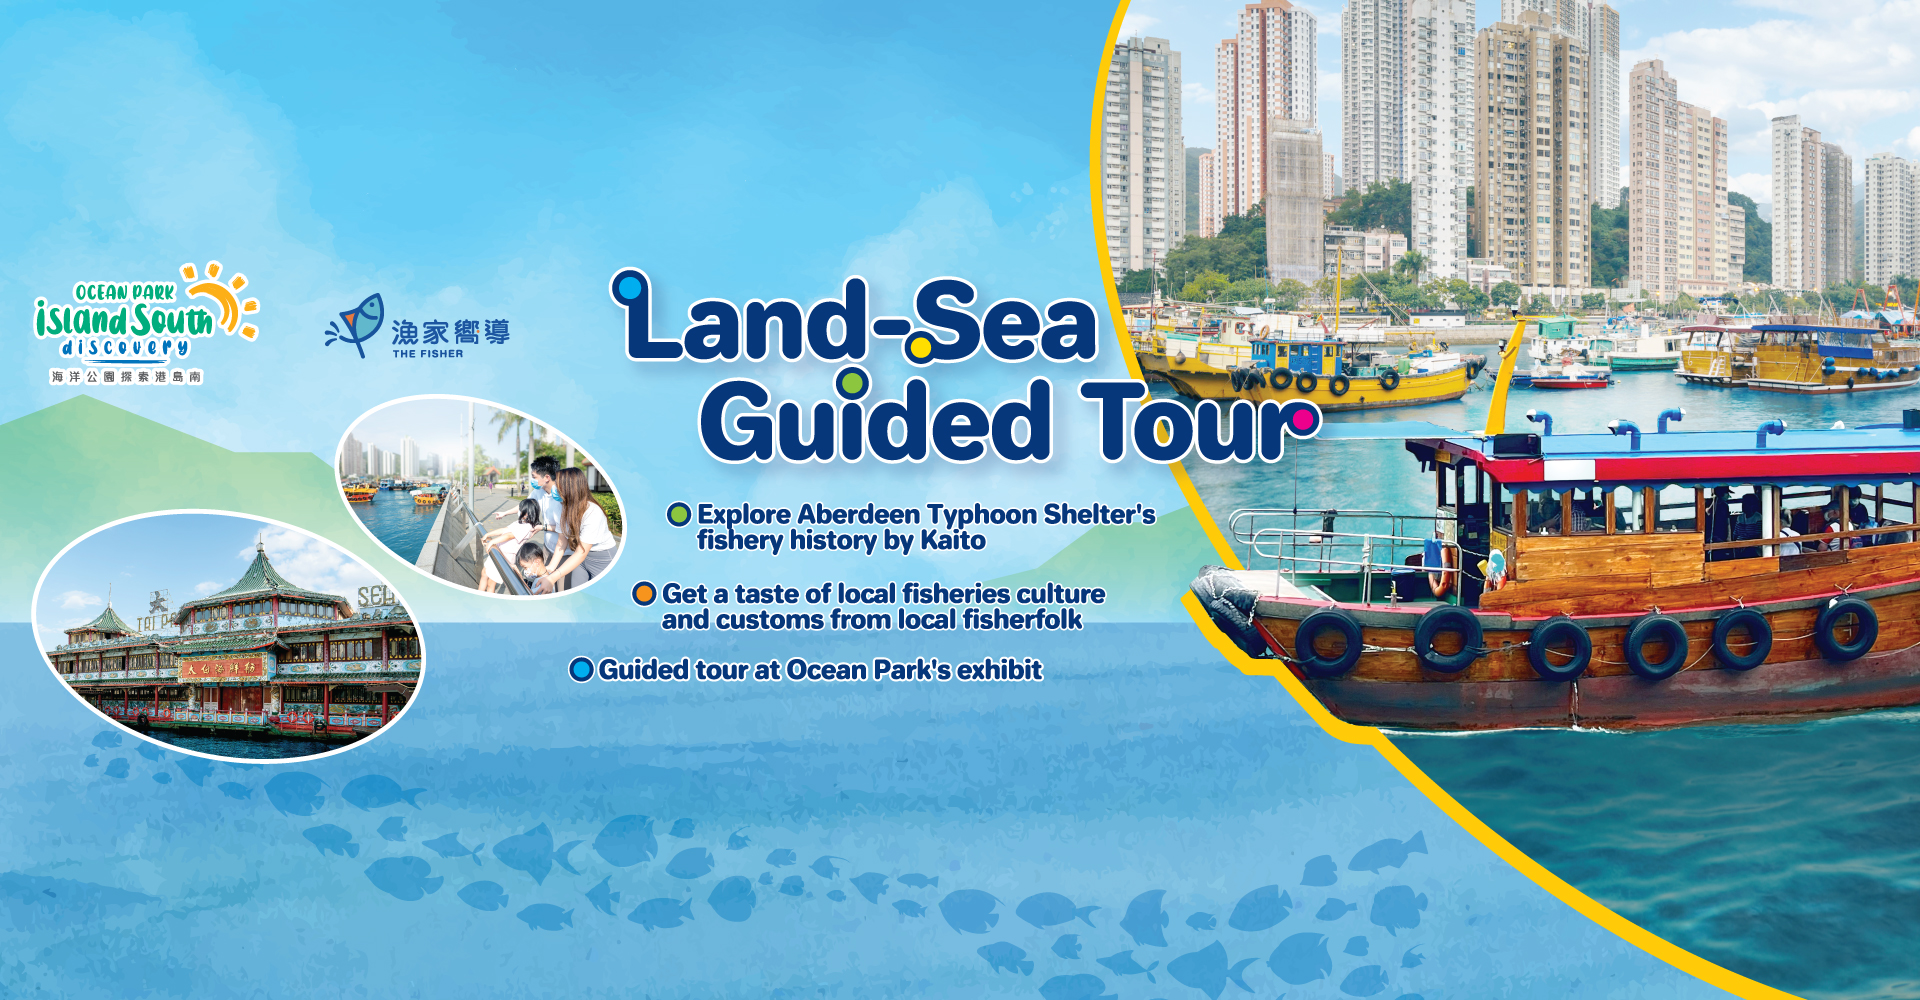 https://media.oceanpark.com.hk/files/s3fs-public/land-sea-guided-tour-innerpage-banner-desktop-en.jpg